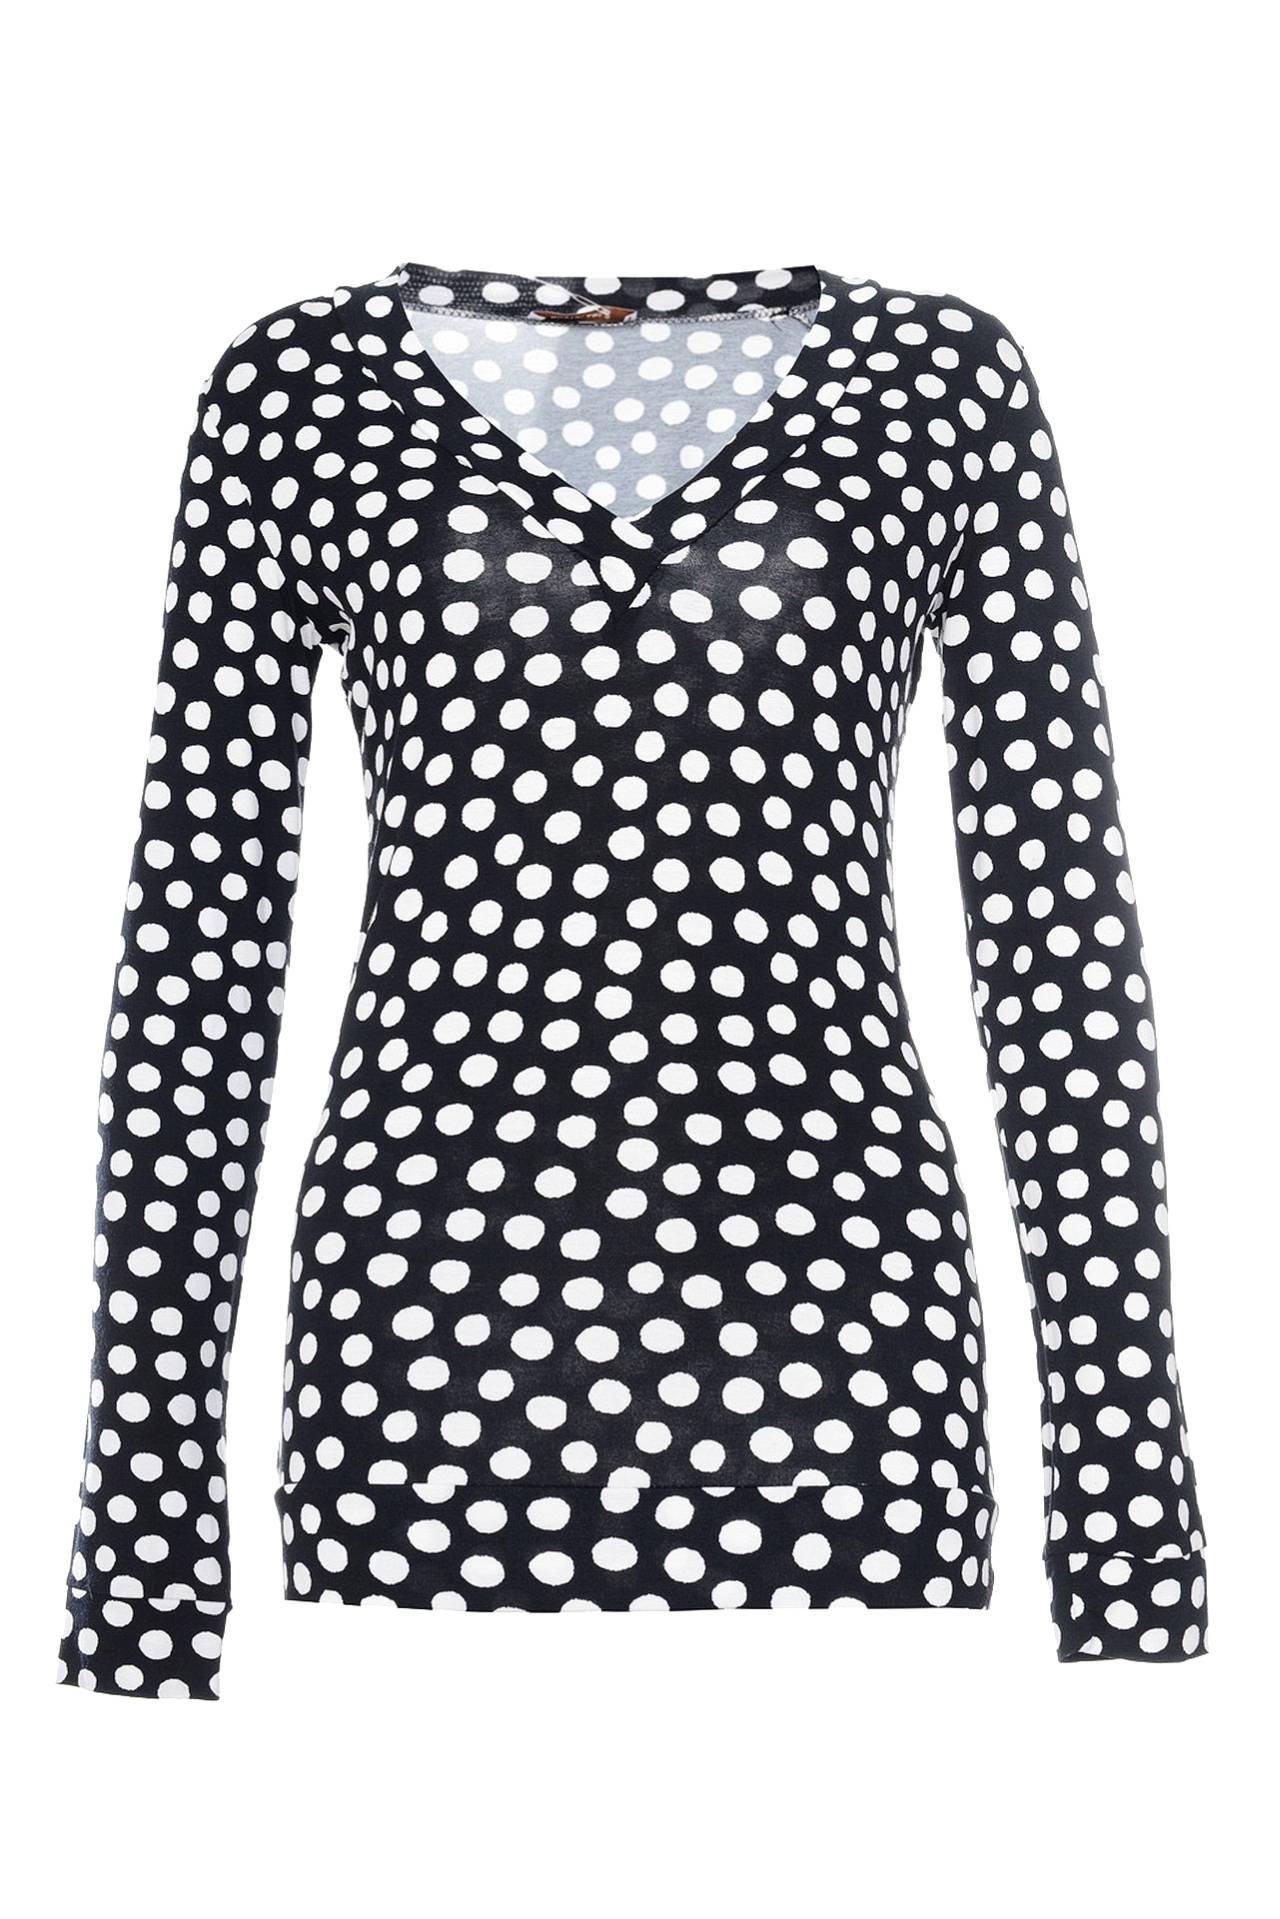 Одежда женская Блузка NORTHLAND (FE1011/11.1). Купить за 3950 руб.